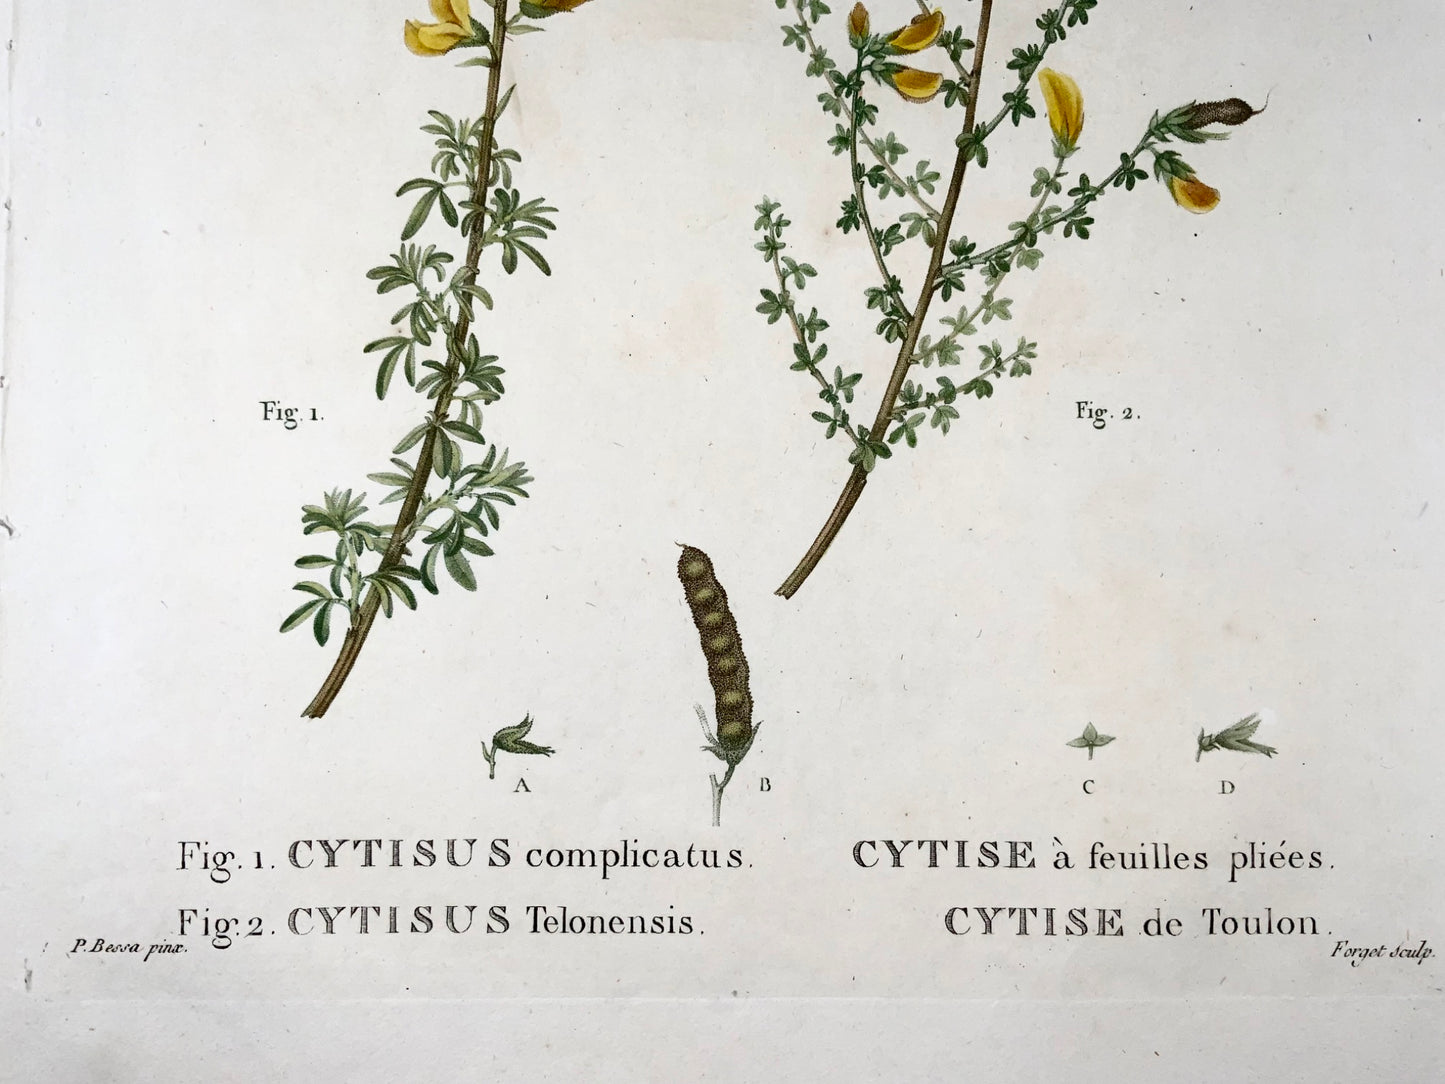 1801 Citiso, Bessa, incisione in foglio, colore a mano, botanica